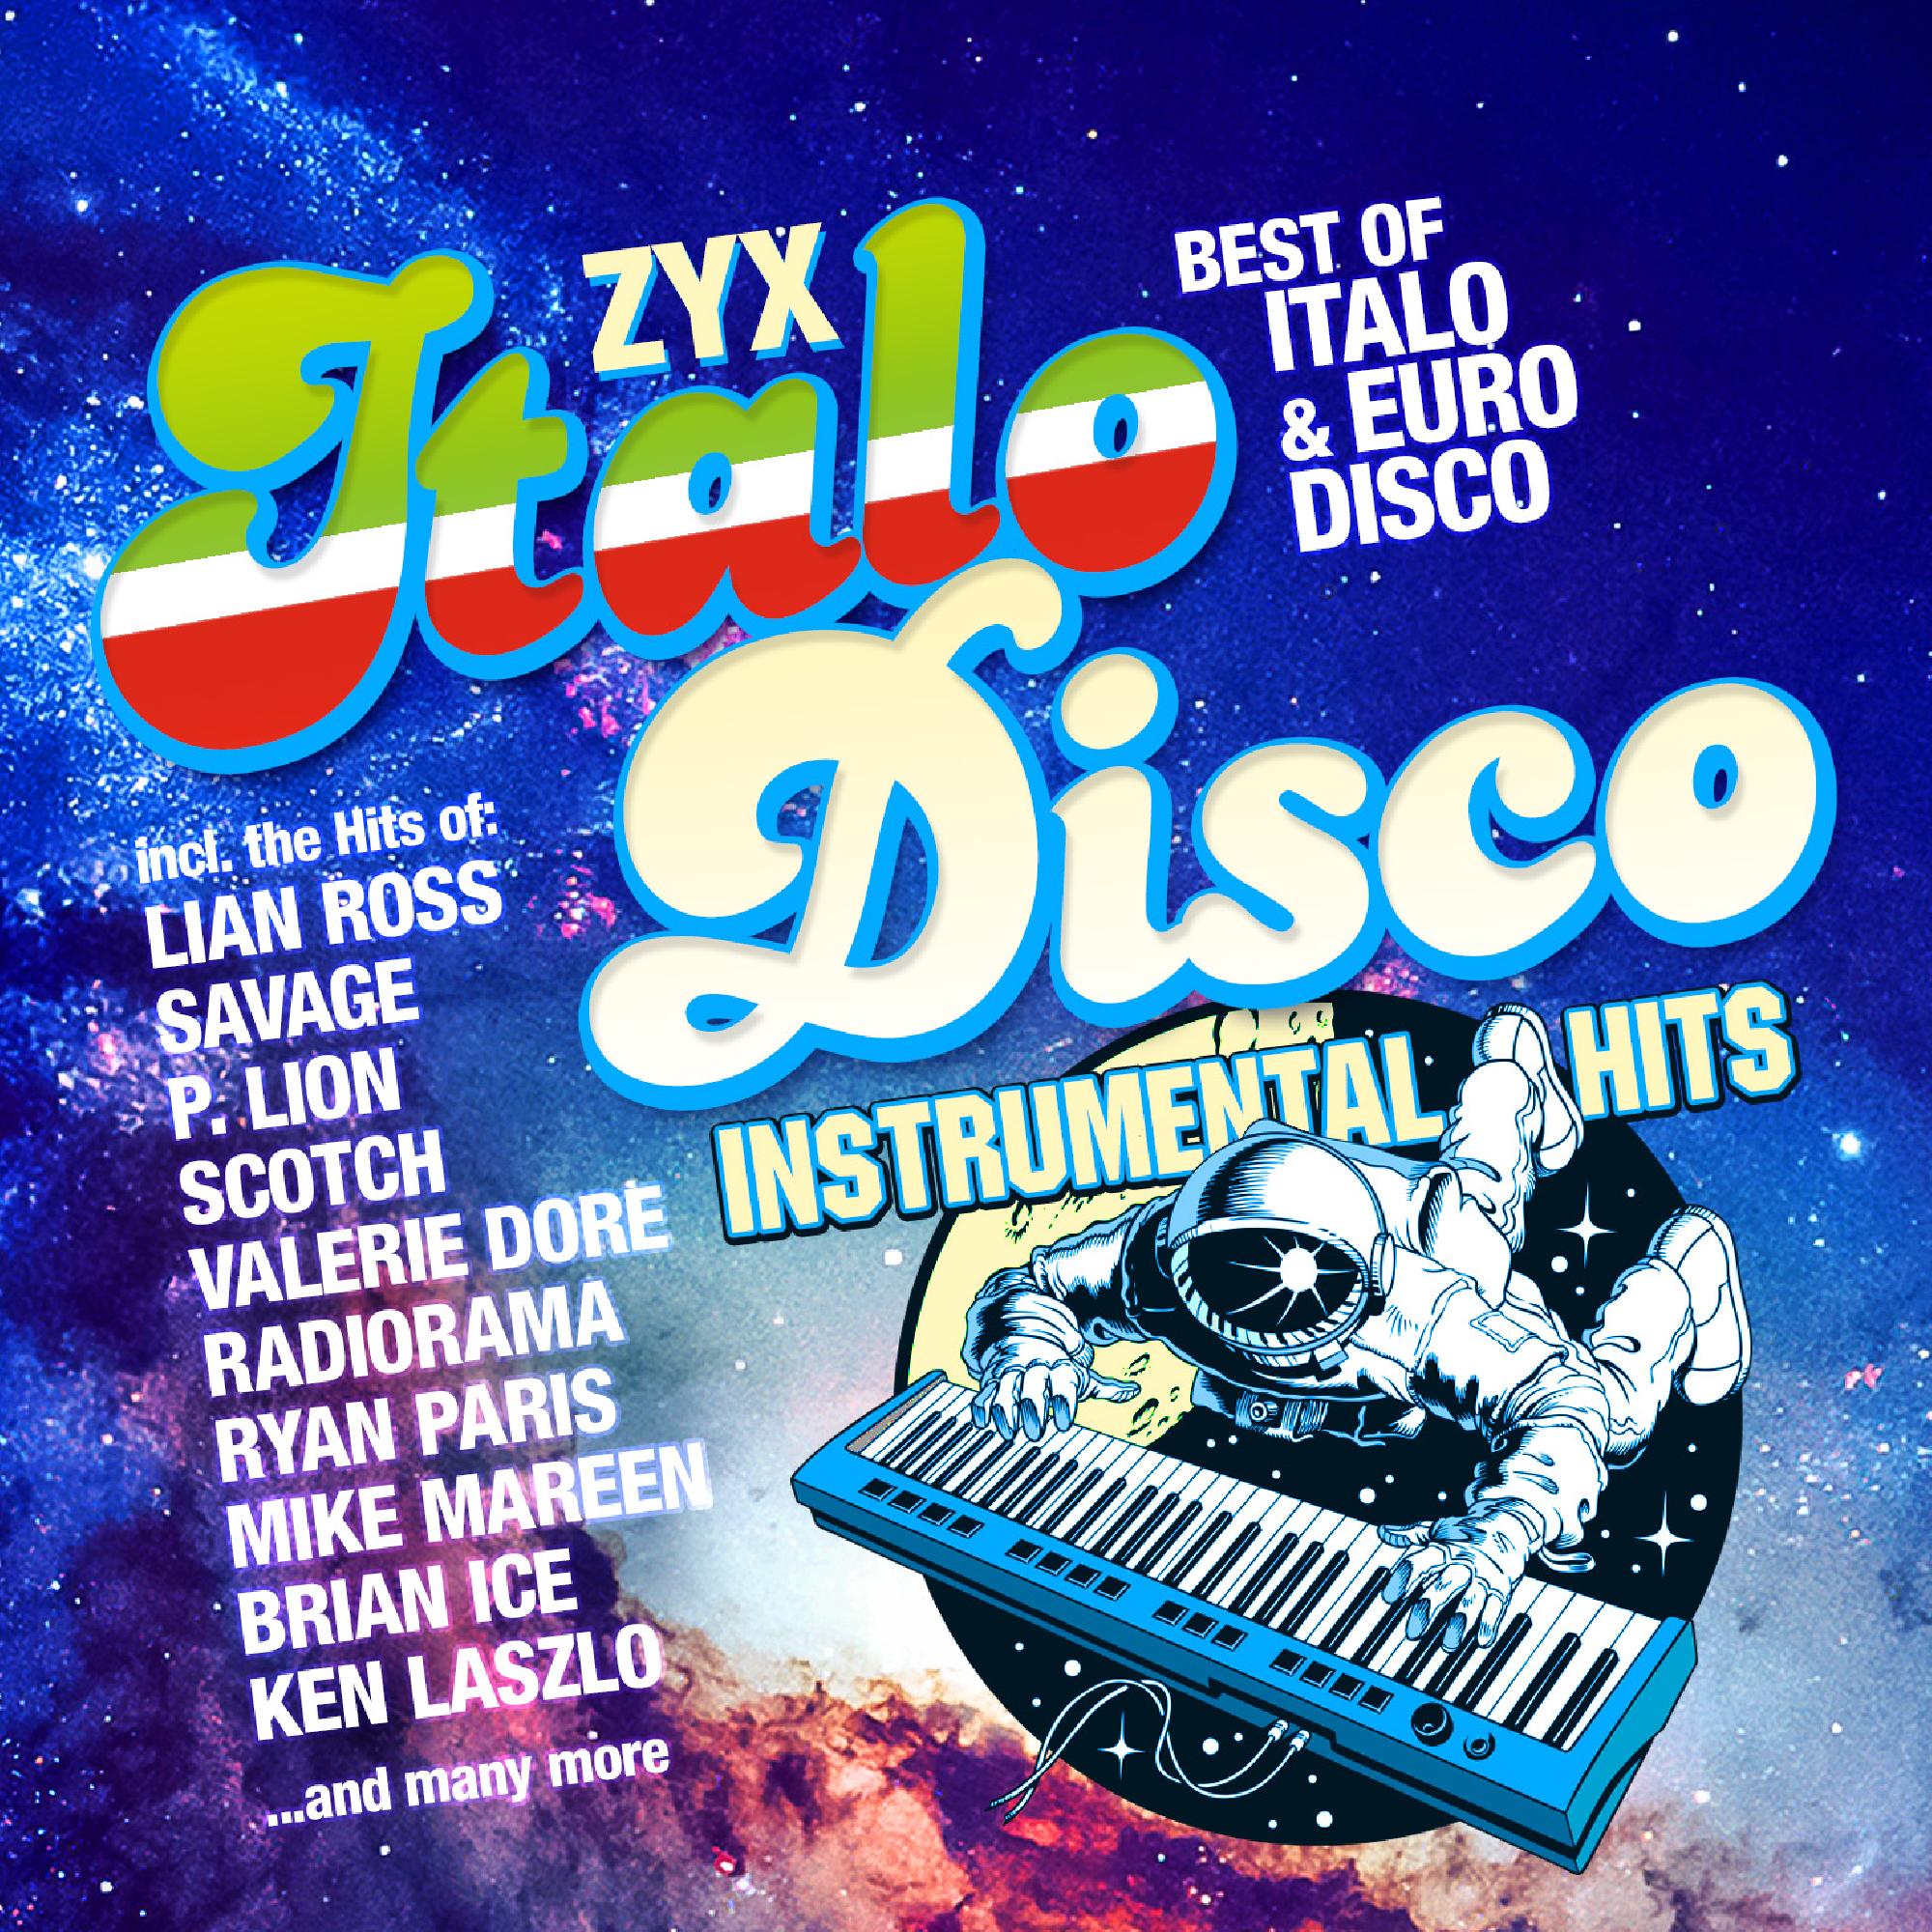 Italo disco new mp3. Итало диско. Итало диско итало диско. ZYX Italo Disco Hits. Итало диско фото.